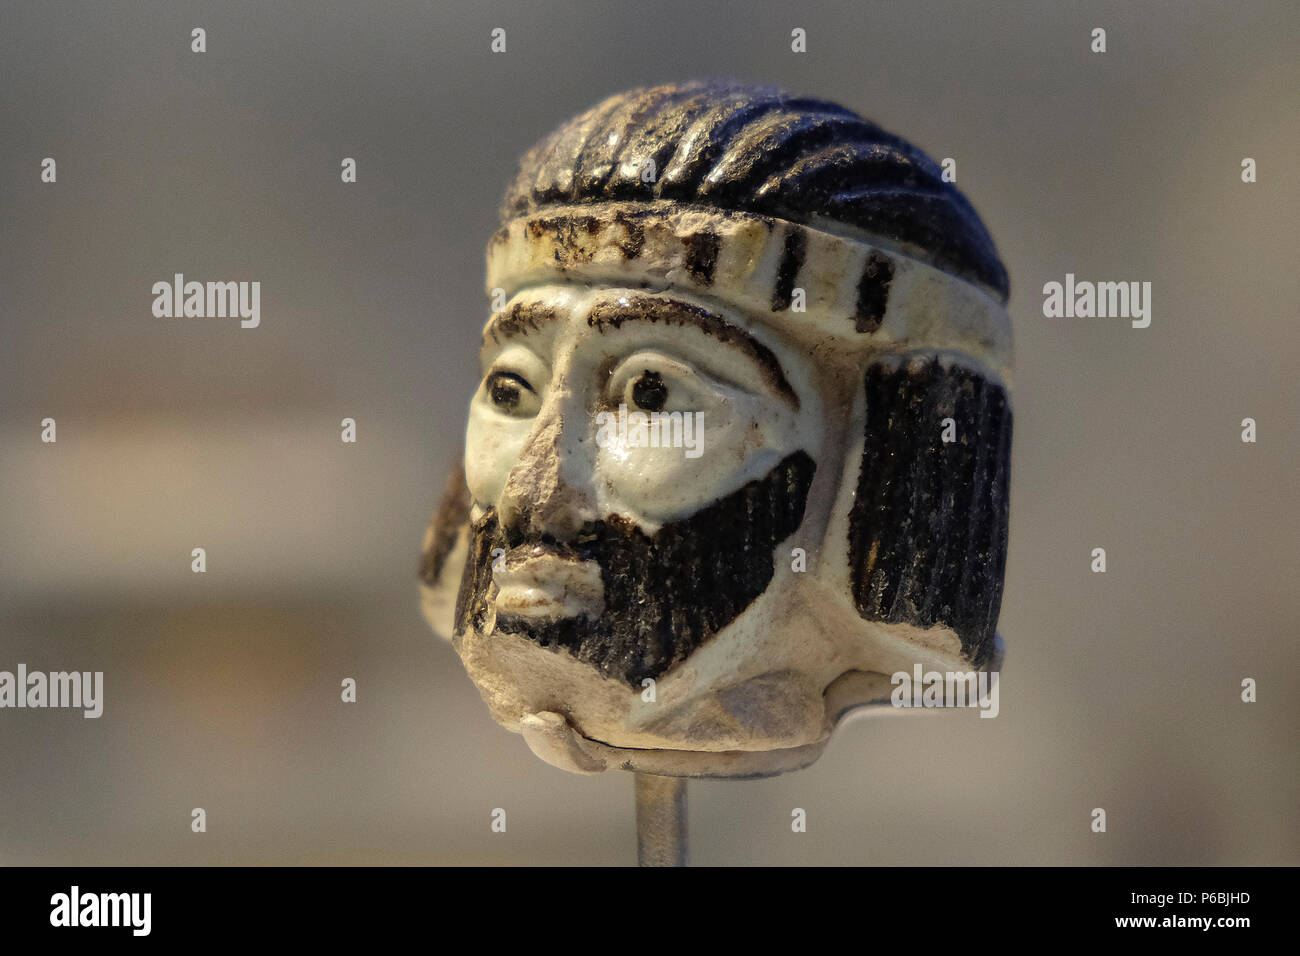 Una de 5 centímetros (2 pulgadas) de la escultura de la cabeza de un rey  que data de hace casi 3.000 años, descubierta en 2017 durante las  excavaciones en un sitio llamado